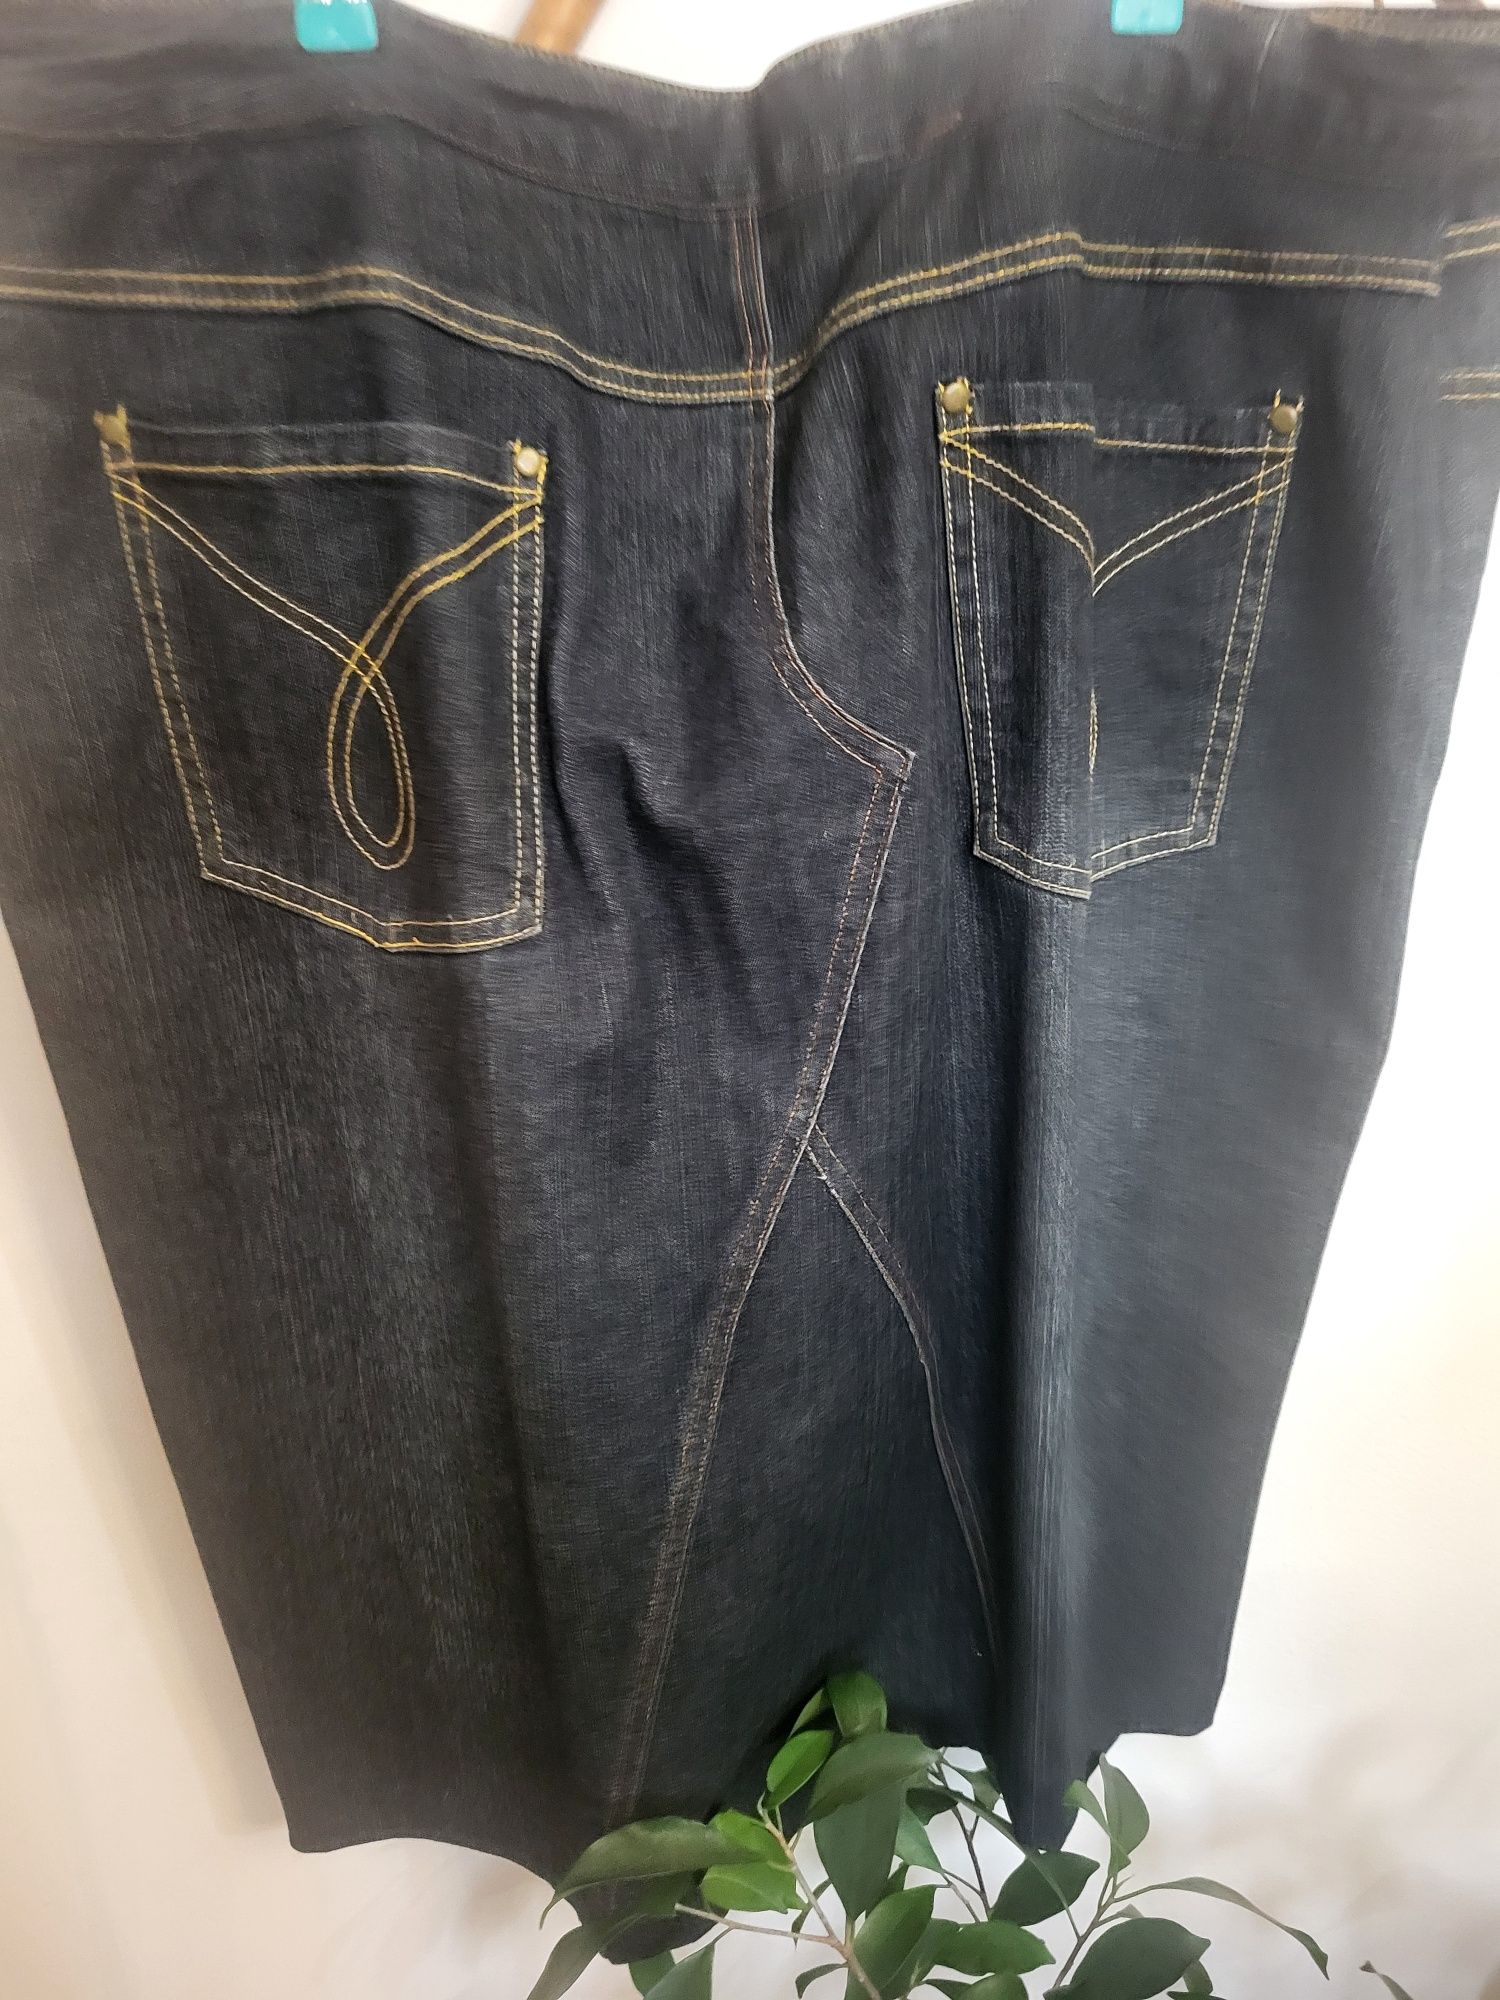 Spodnica jeansowa duza cena 9zlotych